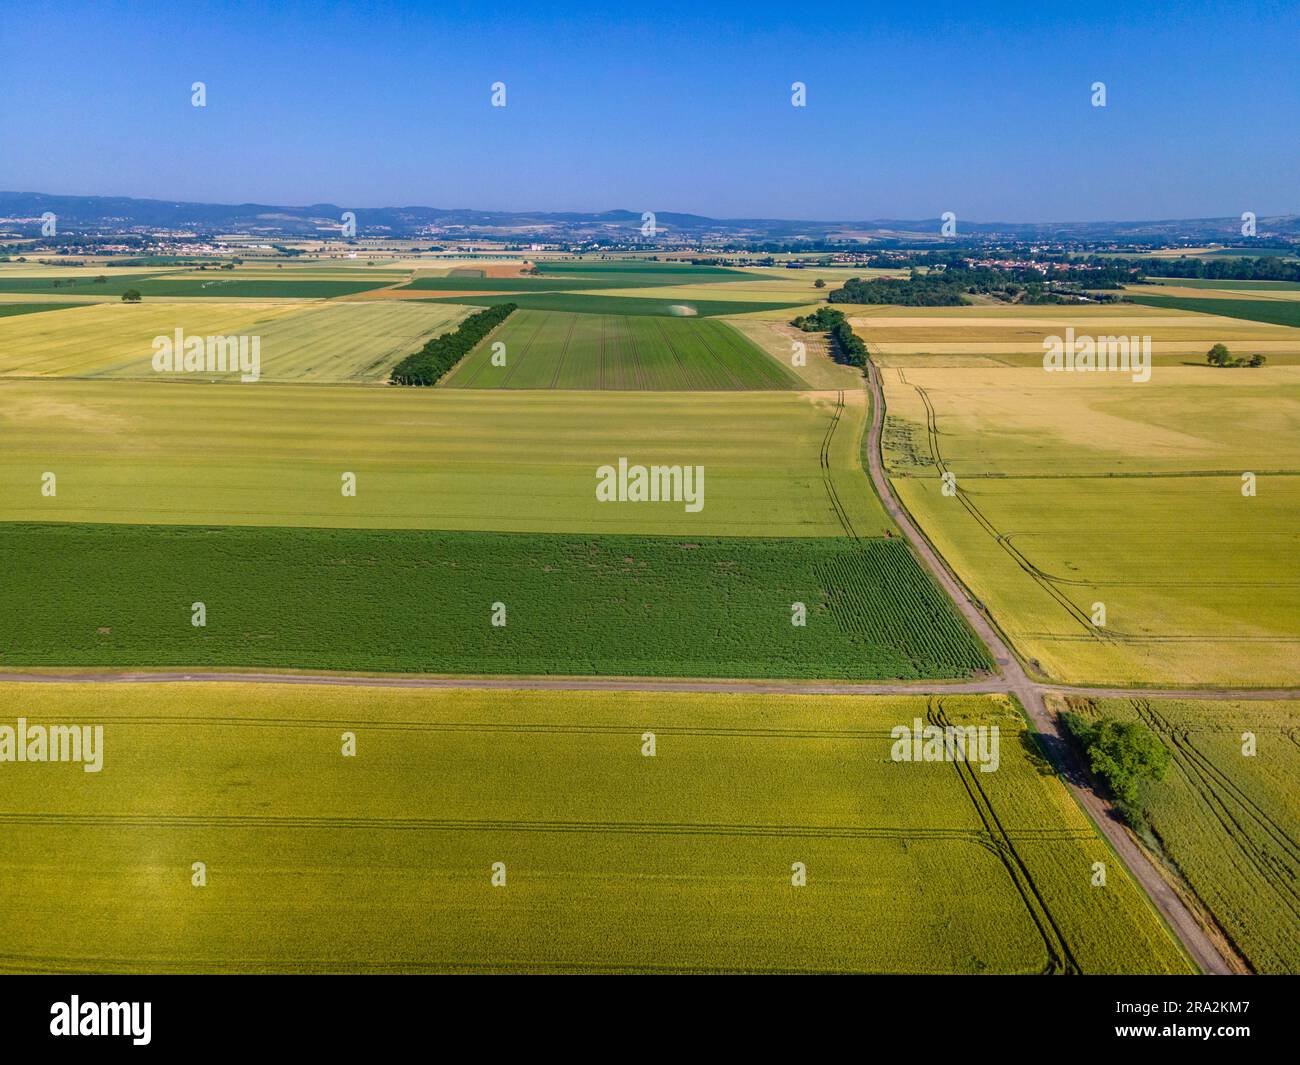 France, Puy de Dome, paysage agricole de la plaine de la Limagne, près de Riom, chaîne des Puys en arrière-plan (vue aérienne) Banque D'Images